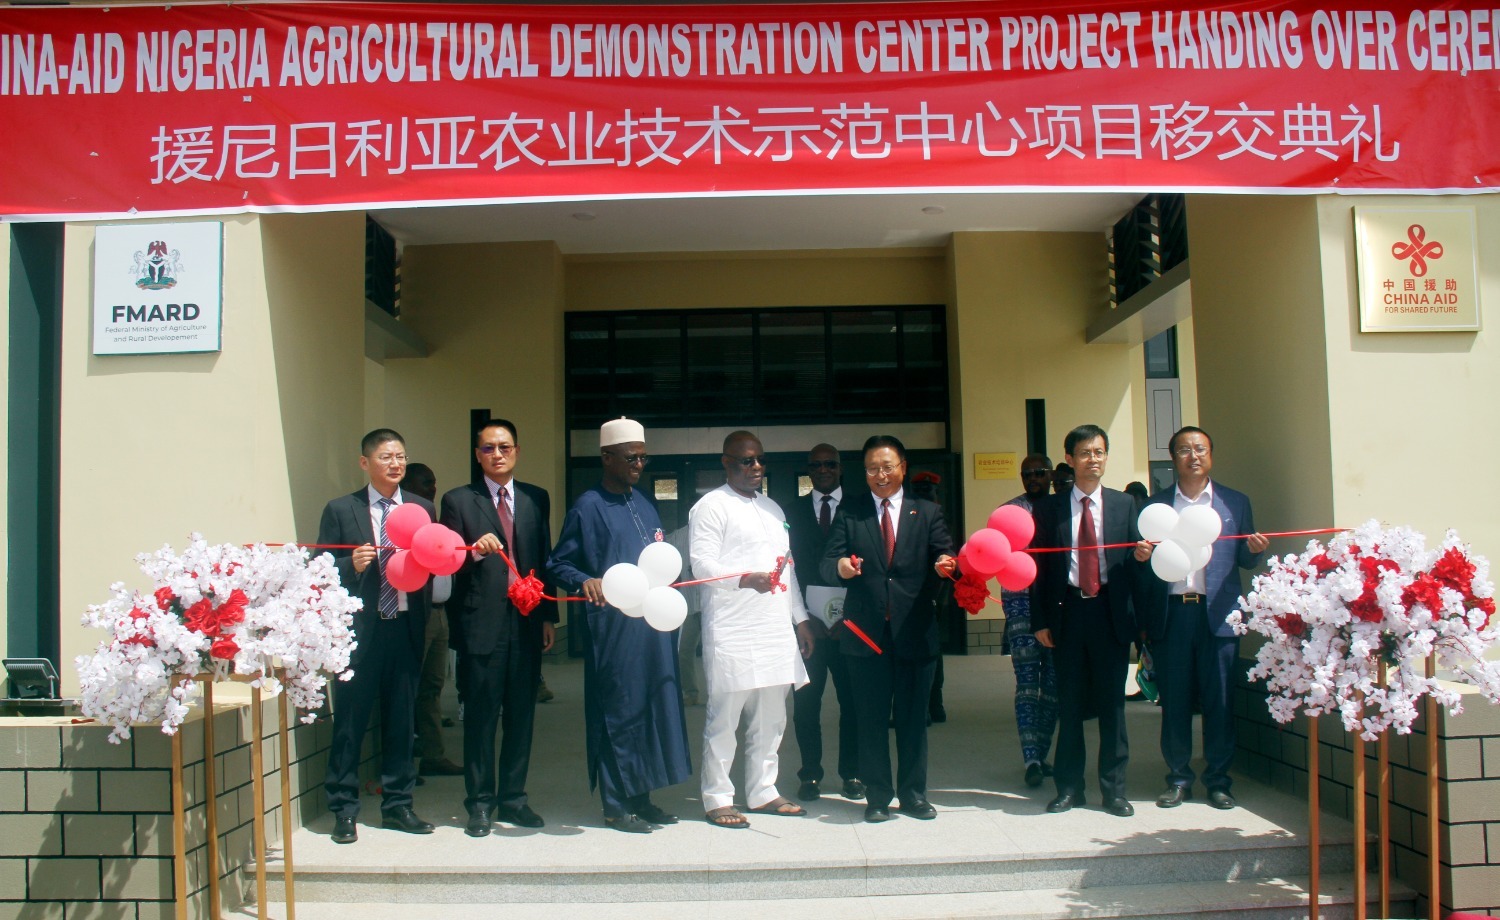 12月6日，在尼日利亚首都阿布贾，受邀嘉宾在中国援建的尼日利亚农业技术示范中心项目移交仪式上剪彩。.JPG